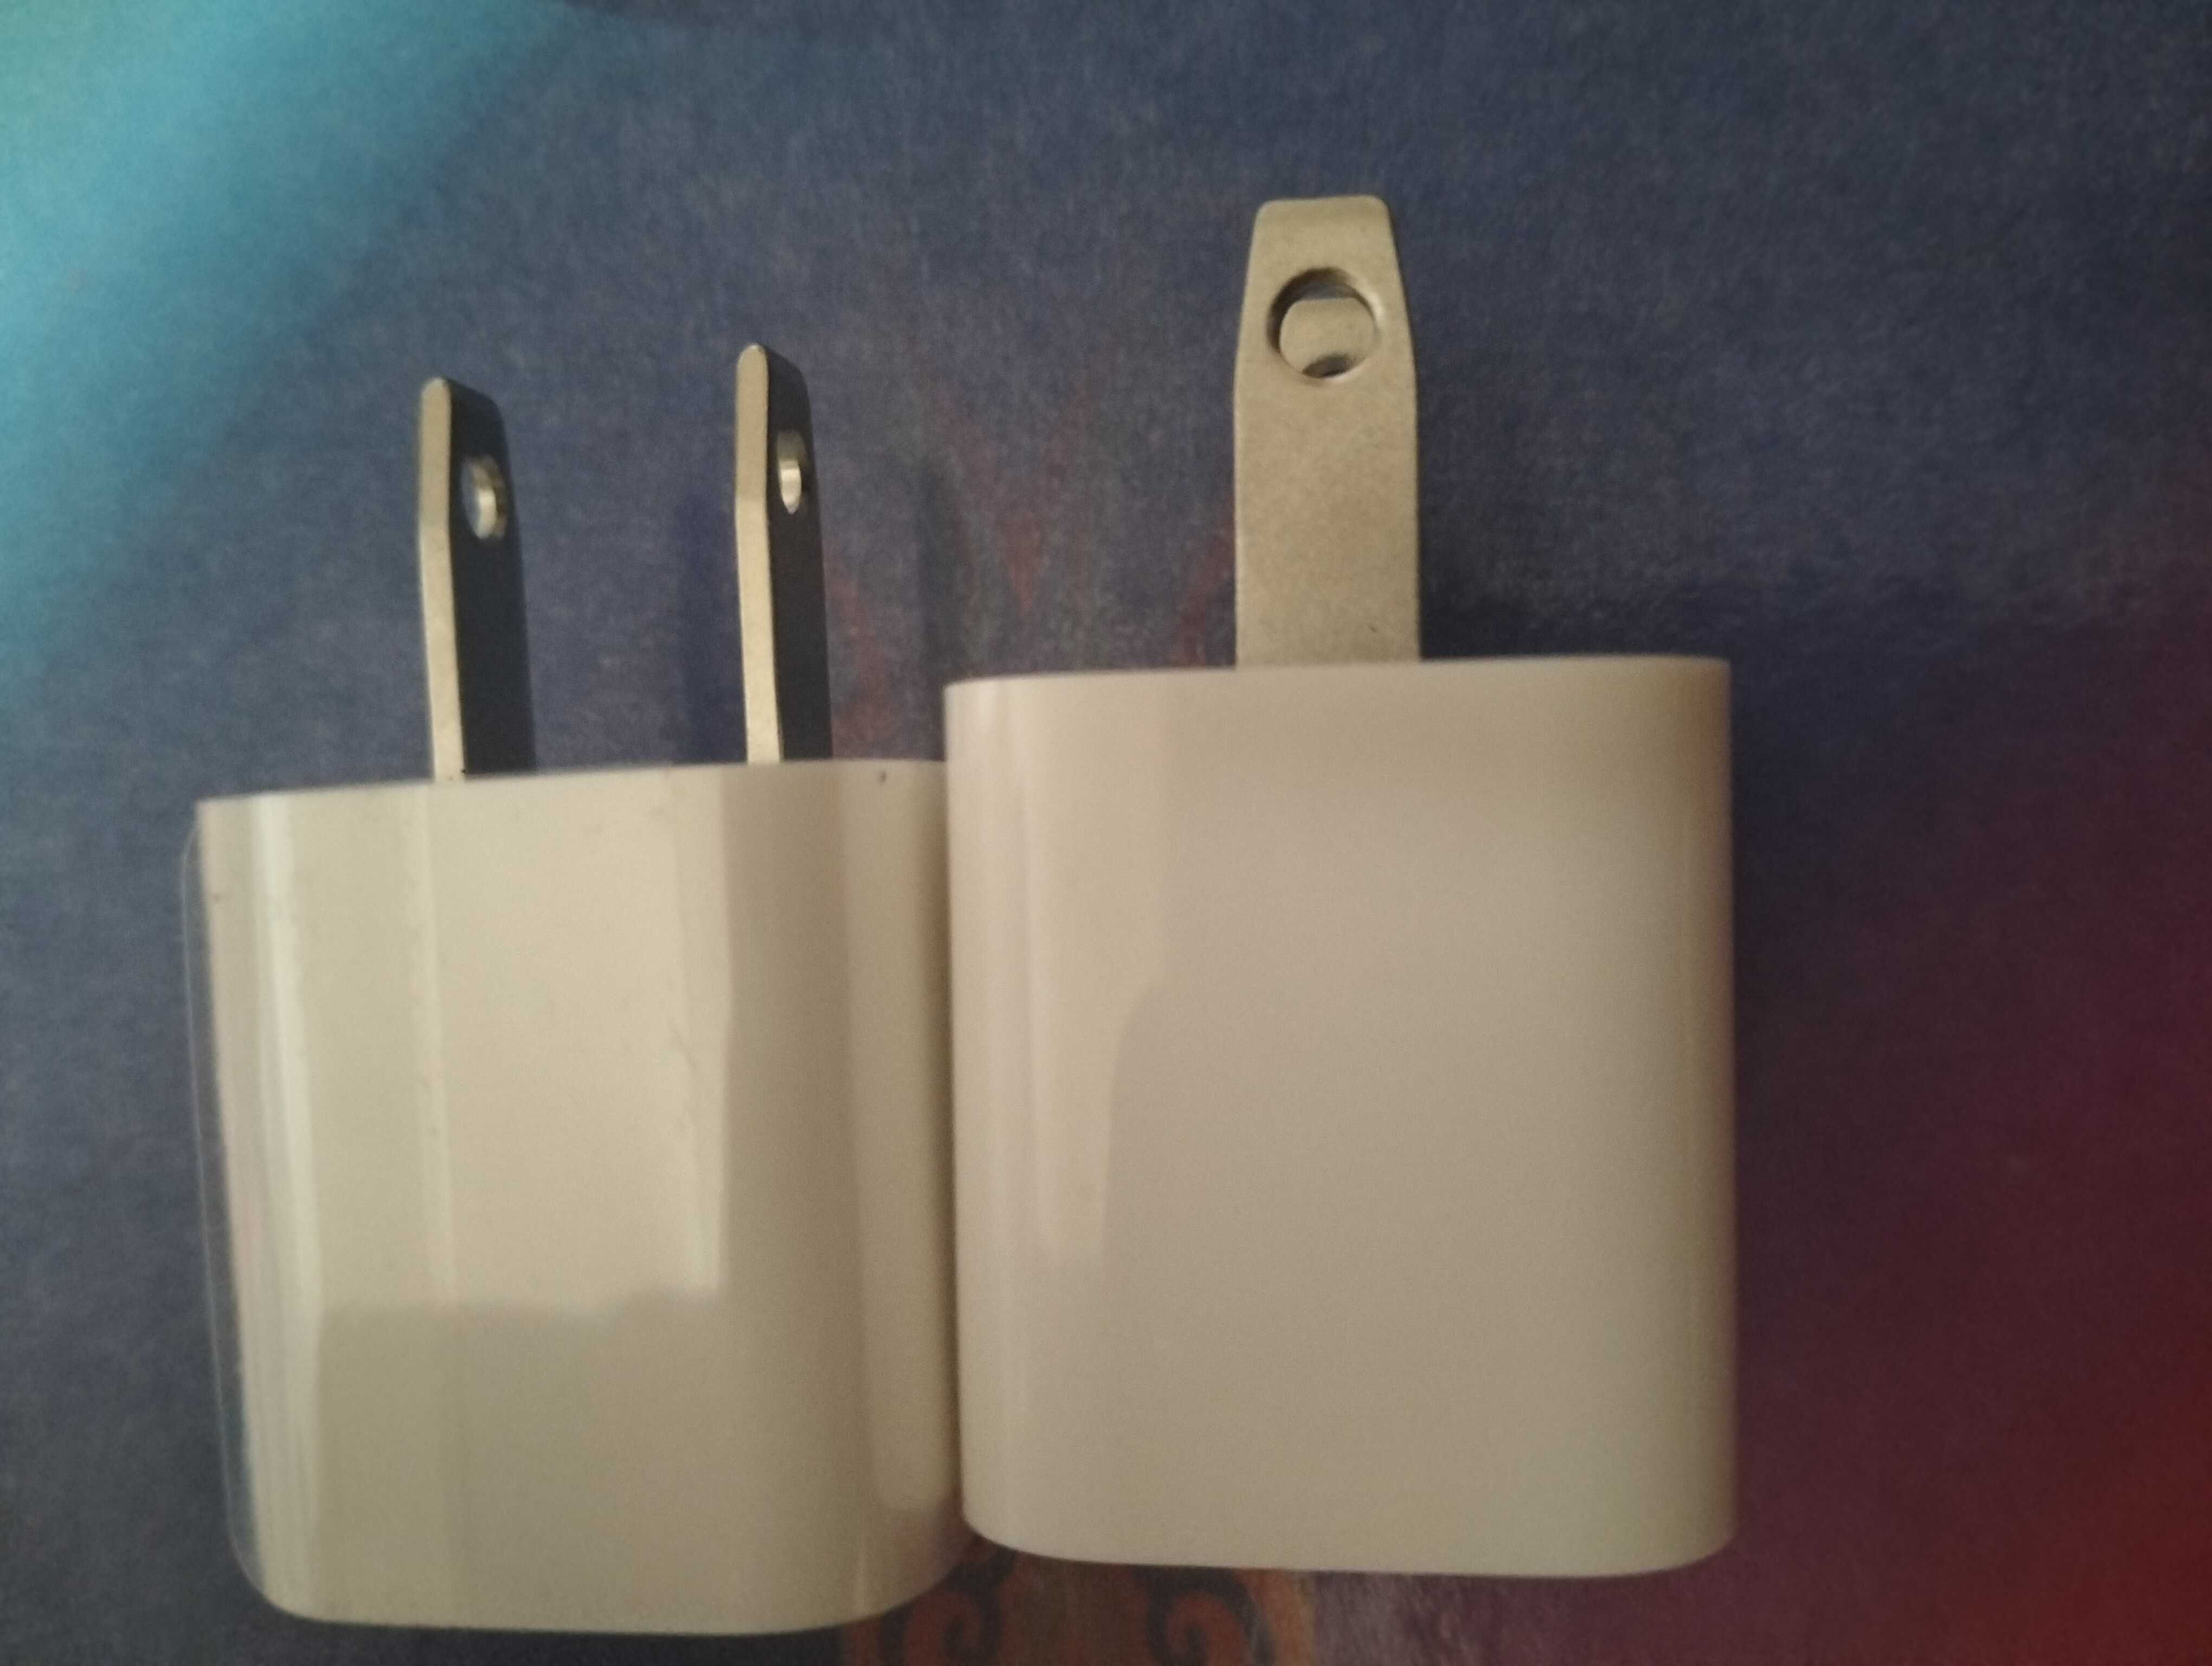 Apple адаптер блок питания зарядки, оригинал новый!